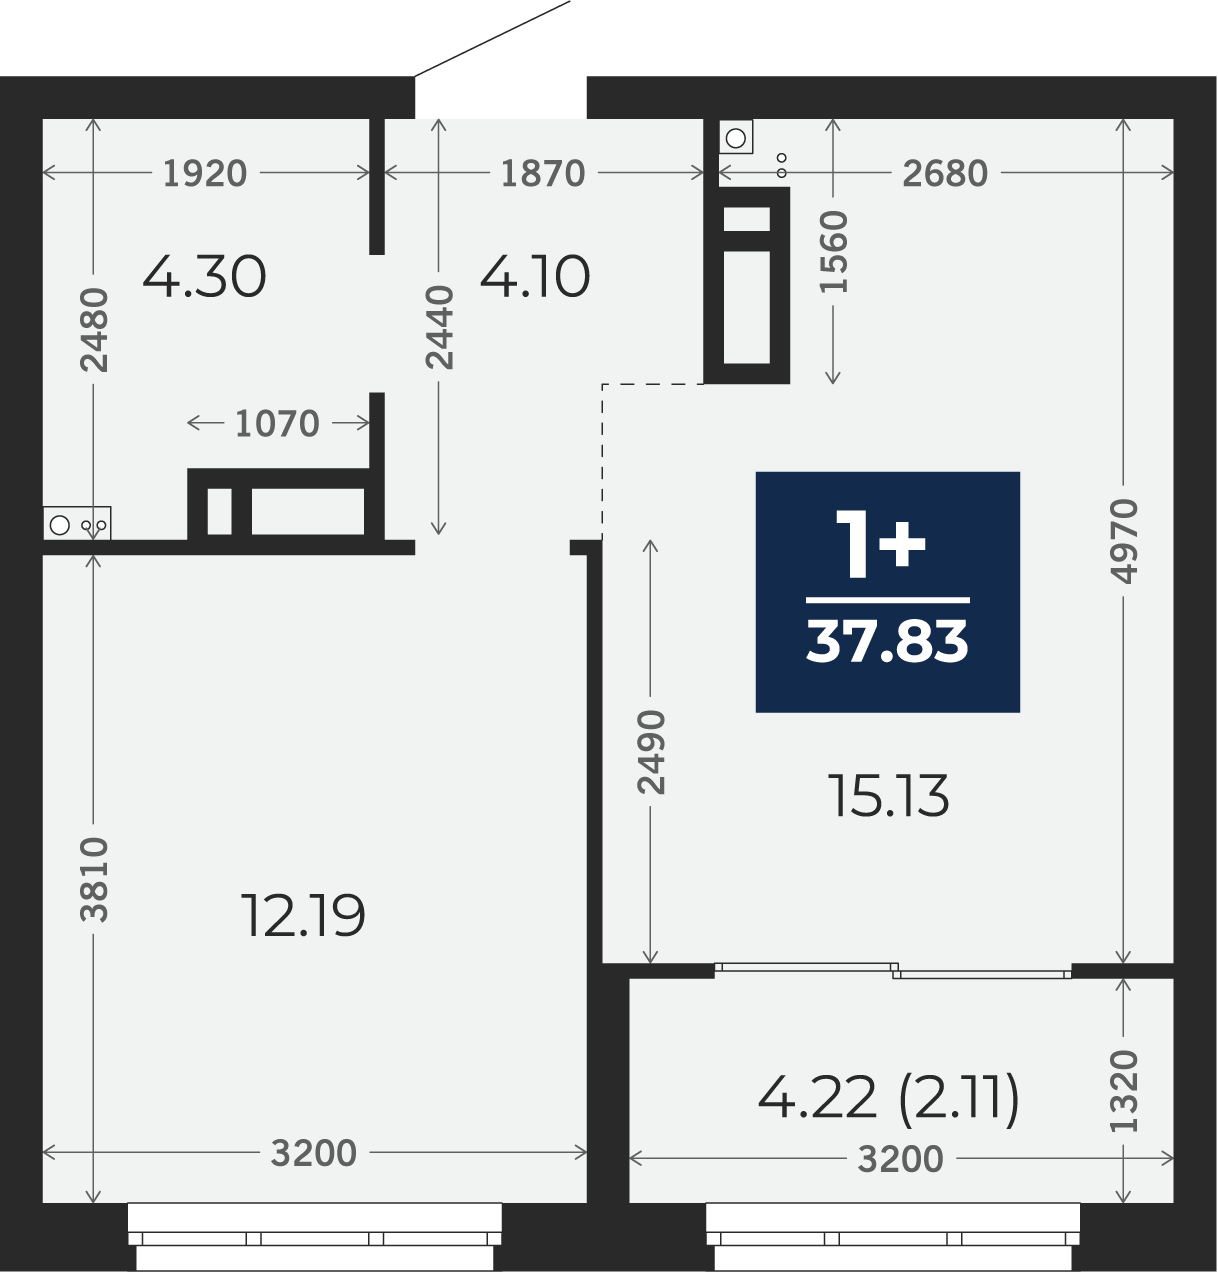 Квартира № 234, 1-комнатная, 37.83 кв. м, 5 этаж